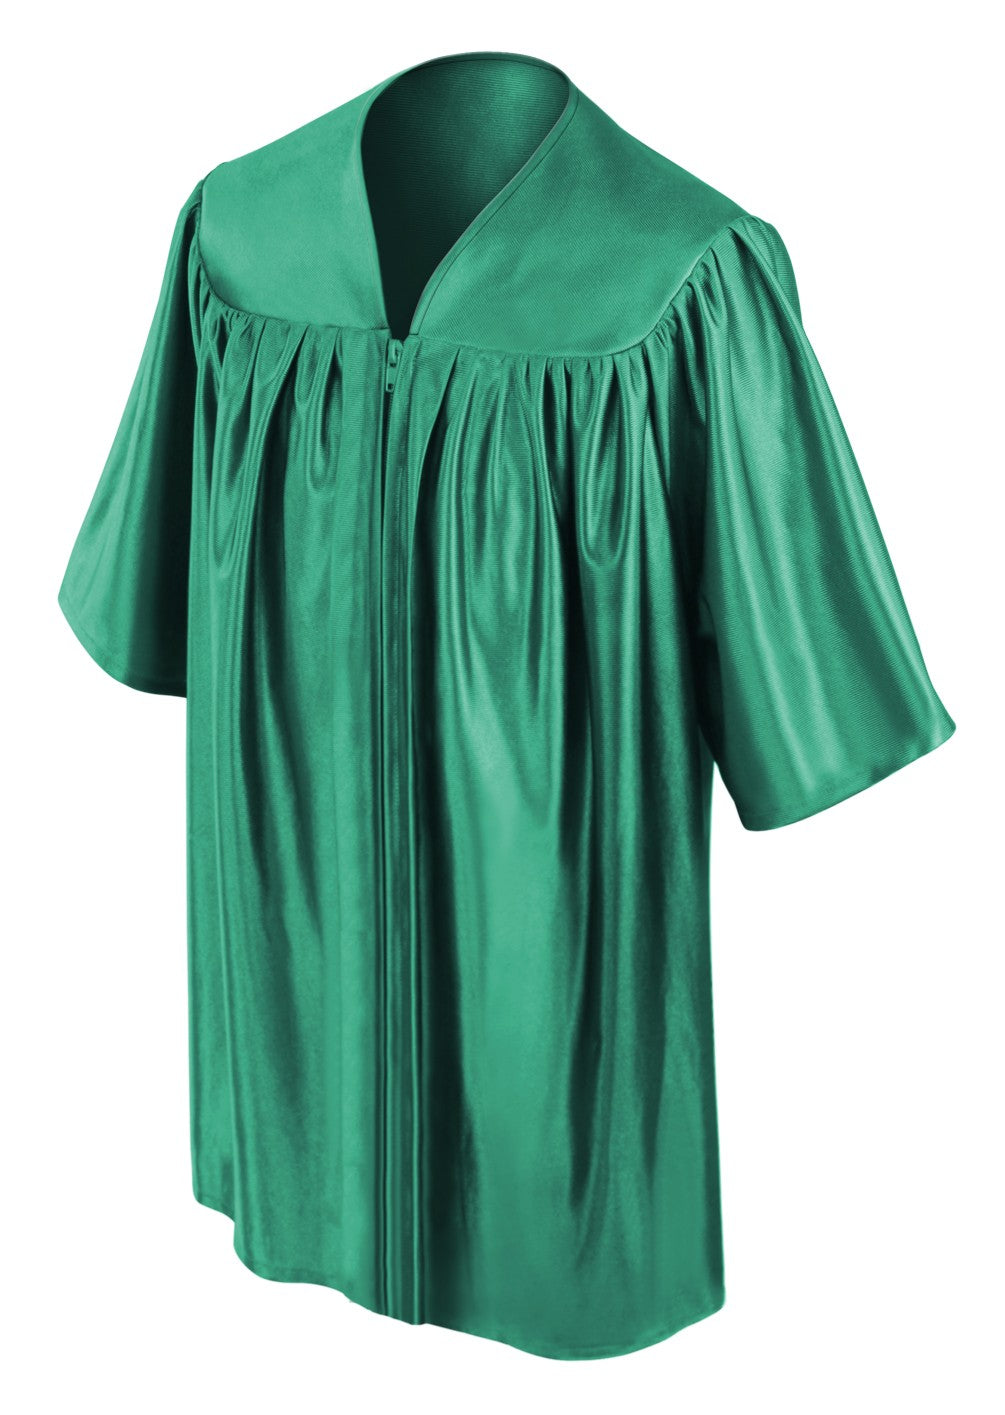 Child's Shiny Emerald Green Choir Robe - Church Choir Robes - ChoirBuy